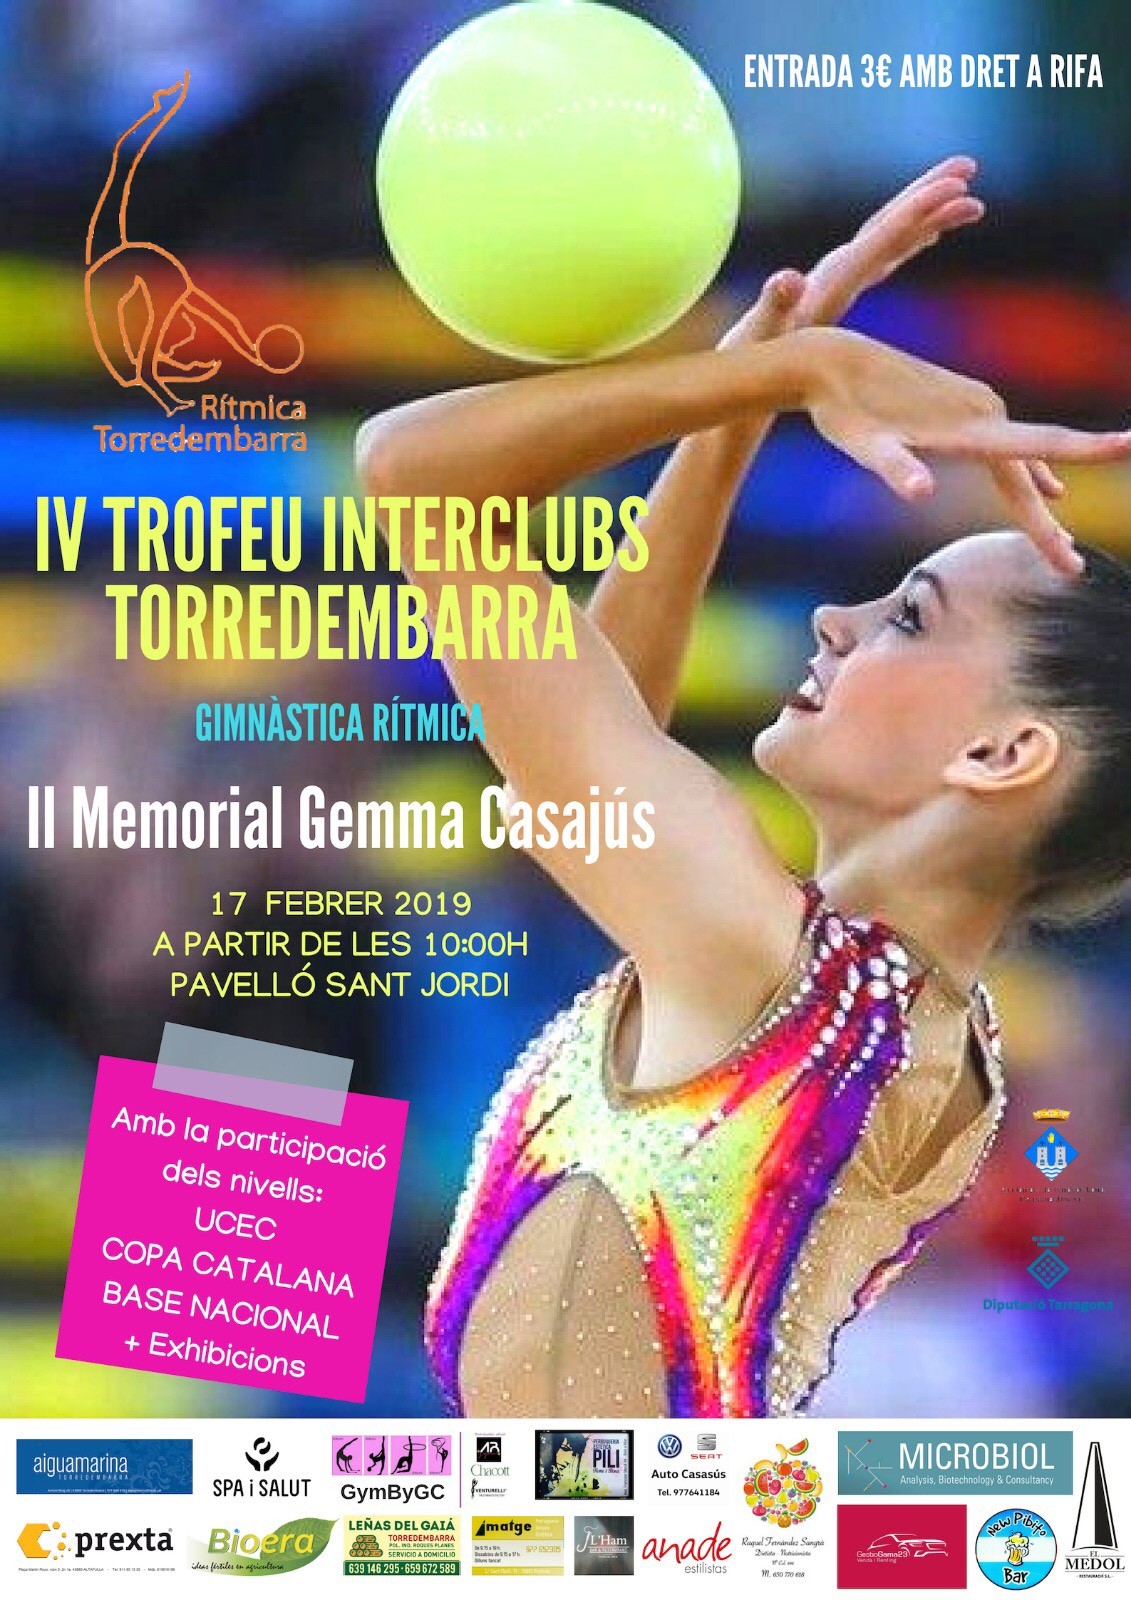 Tindrà lloc aquest diumenge en el marc del IV Trofeu Interclubs Torredembarra